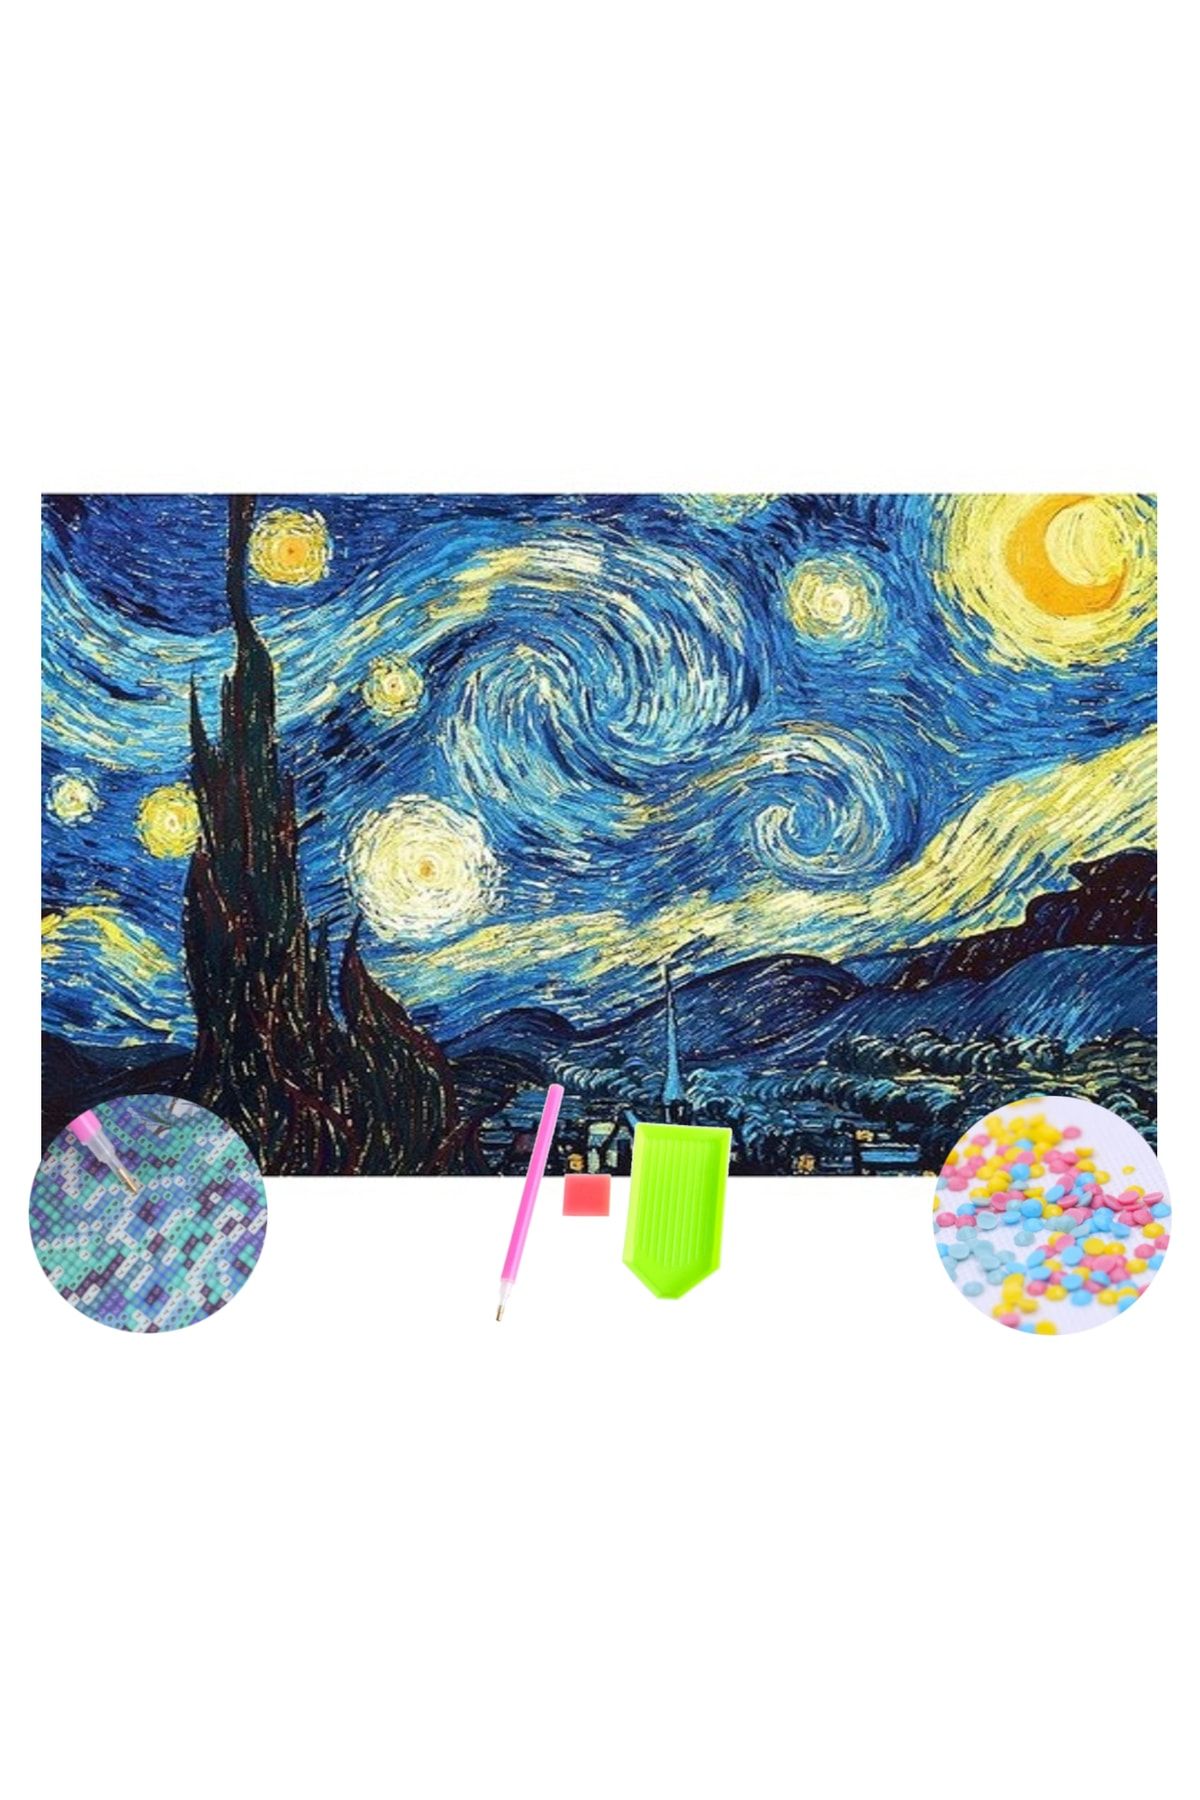 HONDEP 5d Elmas Boyama Mozaik Tablo Tuvale Gerili 40x50 Cm Van Gogh Yıldızlı Gece Puzzle Tuval Seti